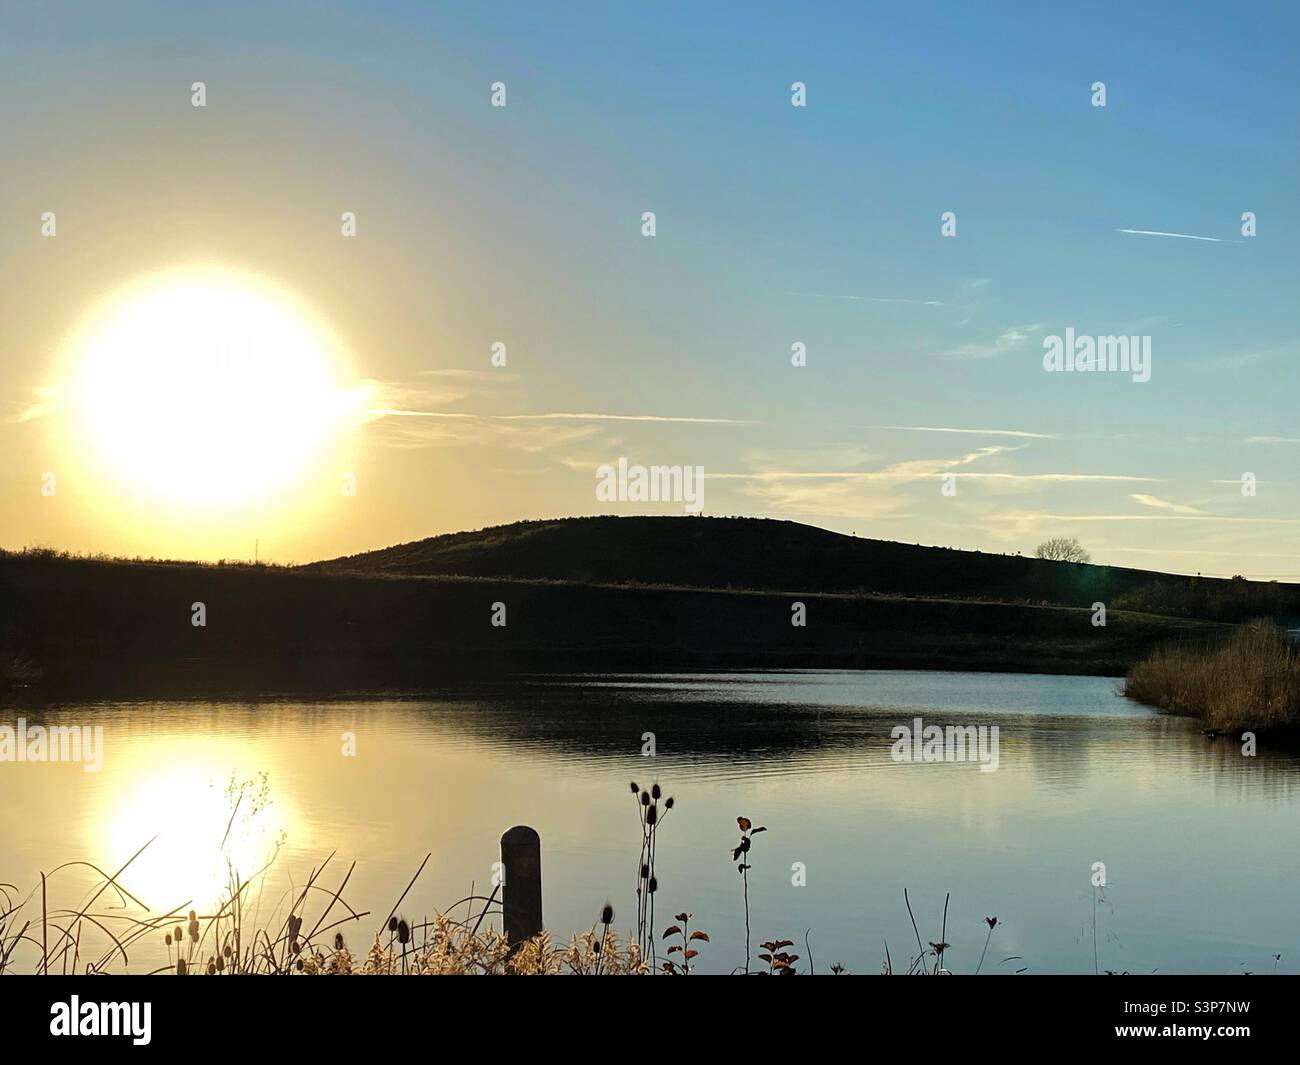 Die Sonne beginnt hinter einem Hügel unterzugehen. Die Spiegelung der Sonne kann im See im Vordergrund gesehen werden. Stockfoto